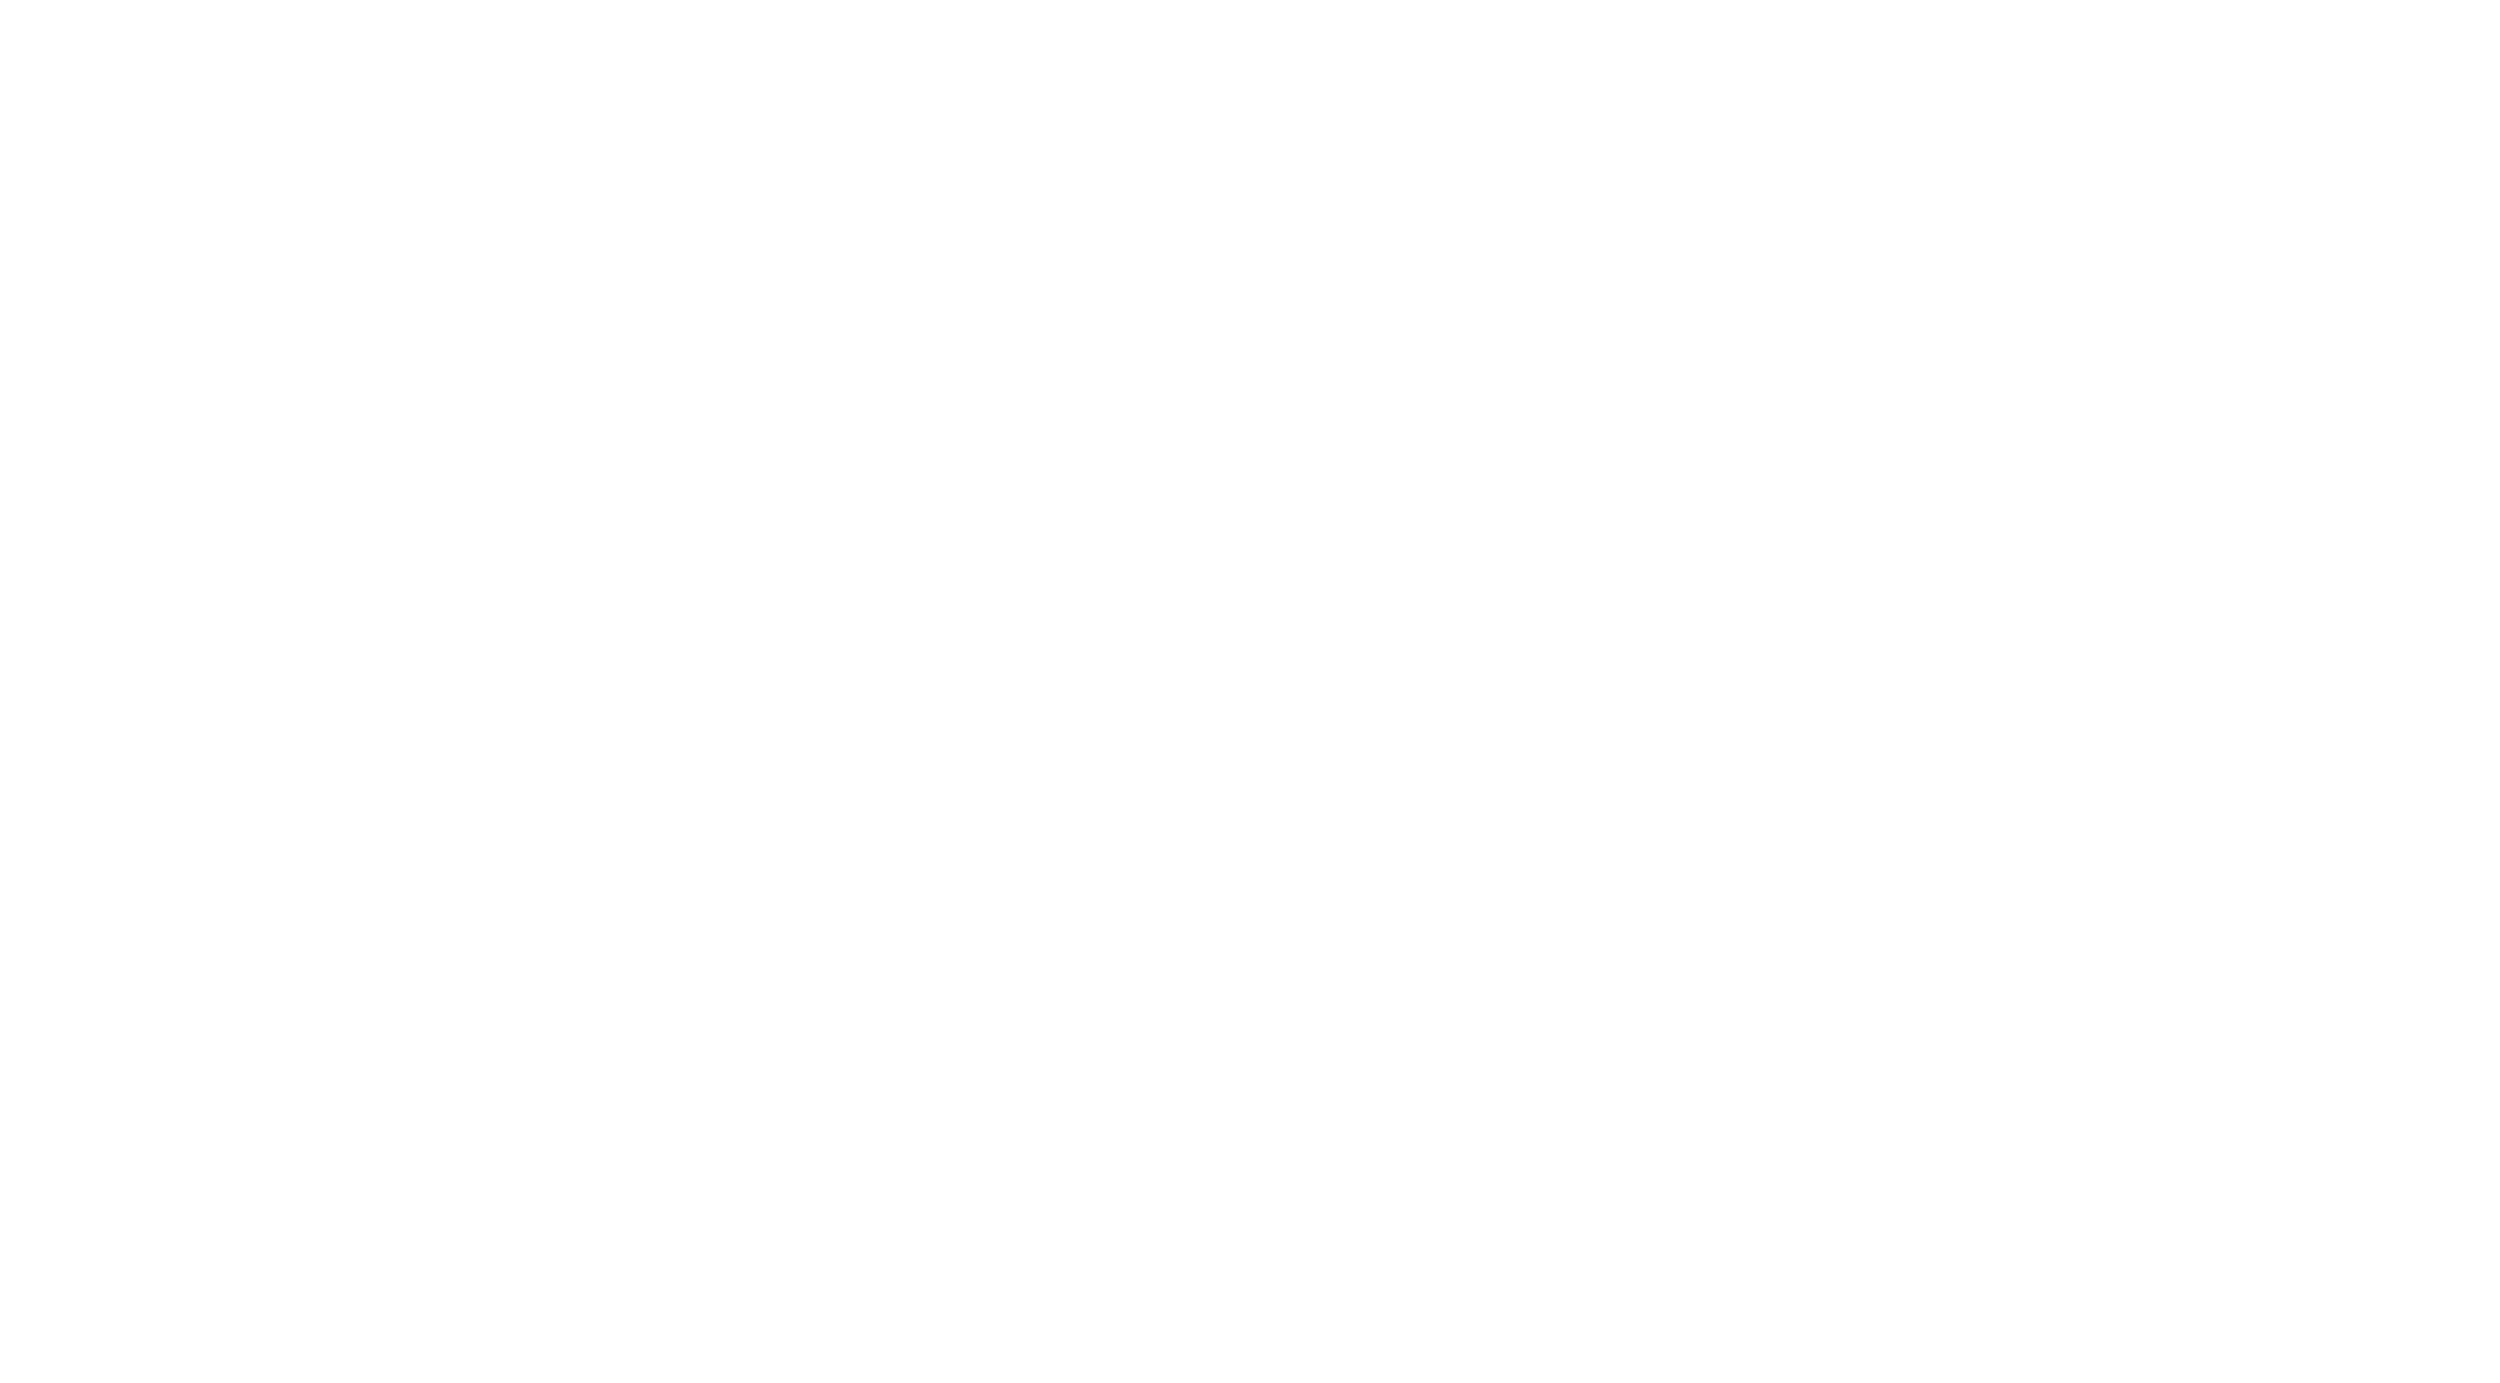 SBC Bicycle